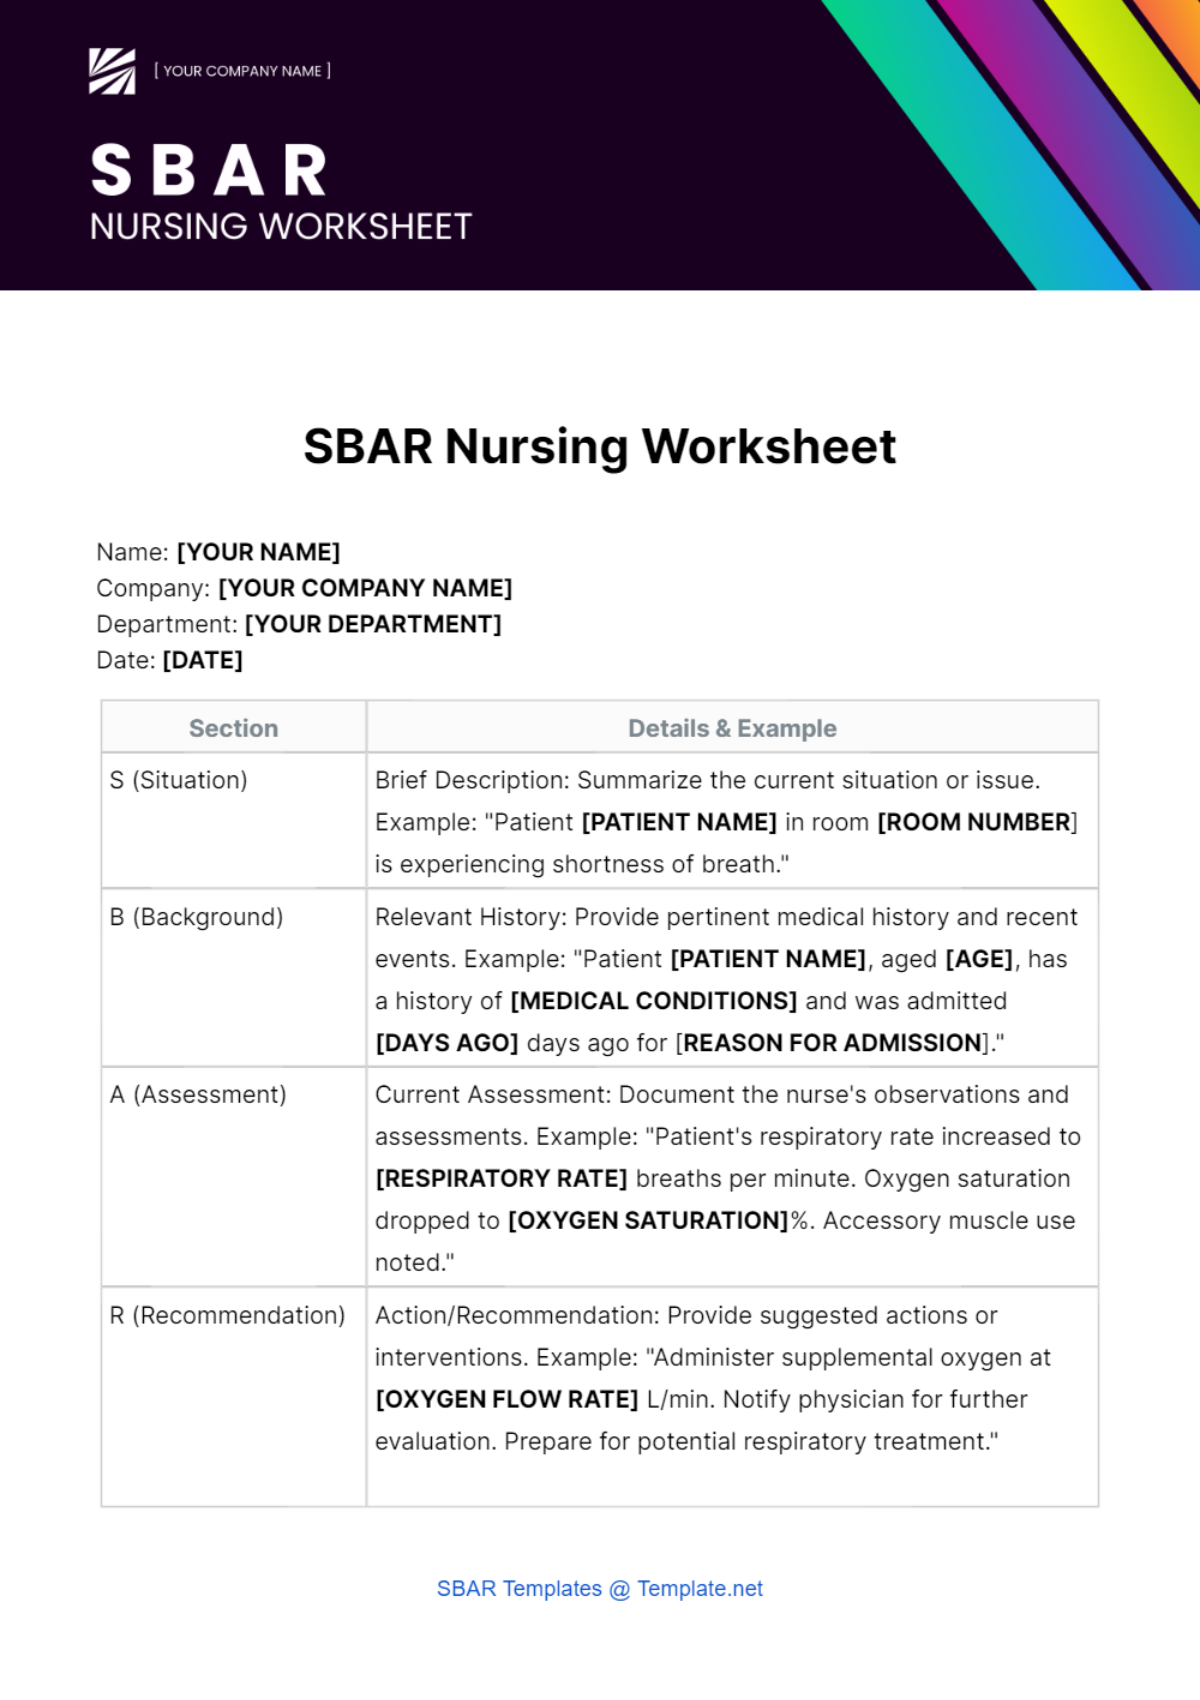 SBAR Nursing Worksheet Template